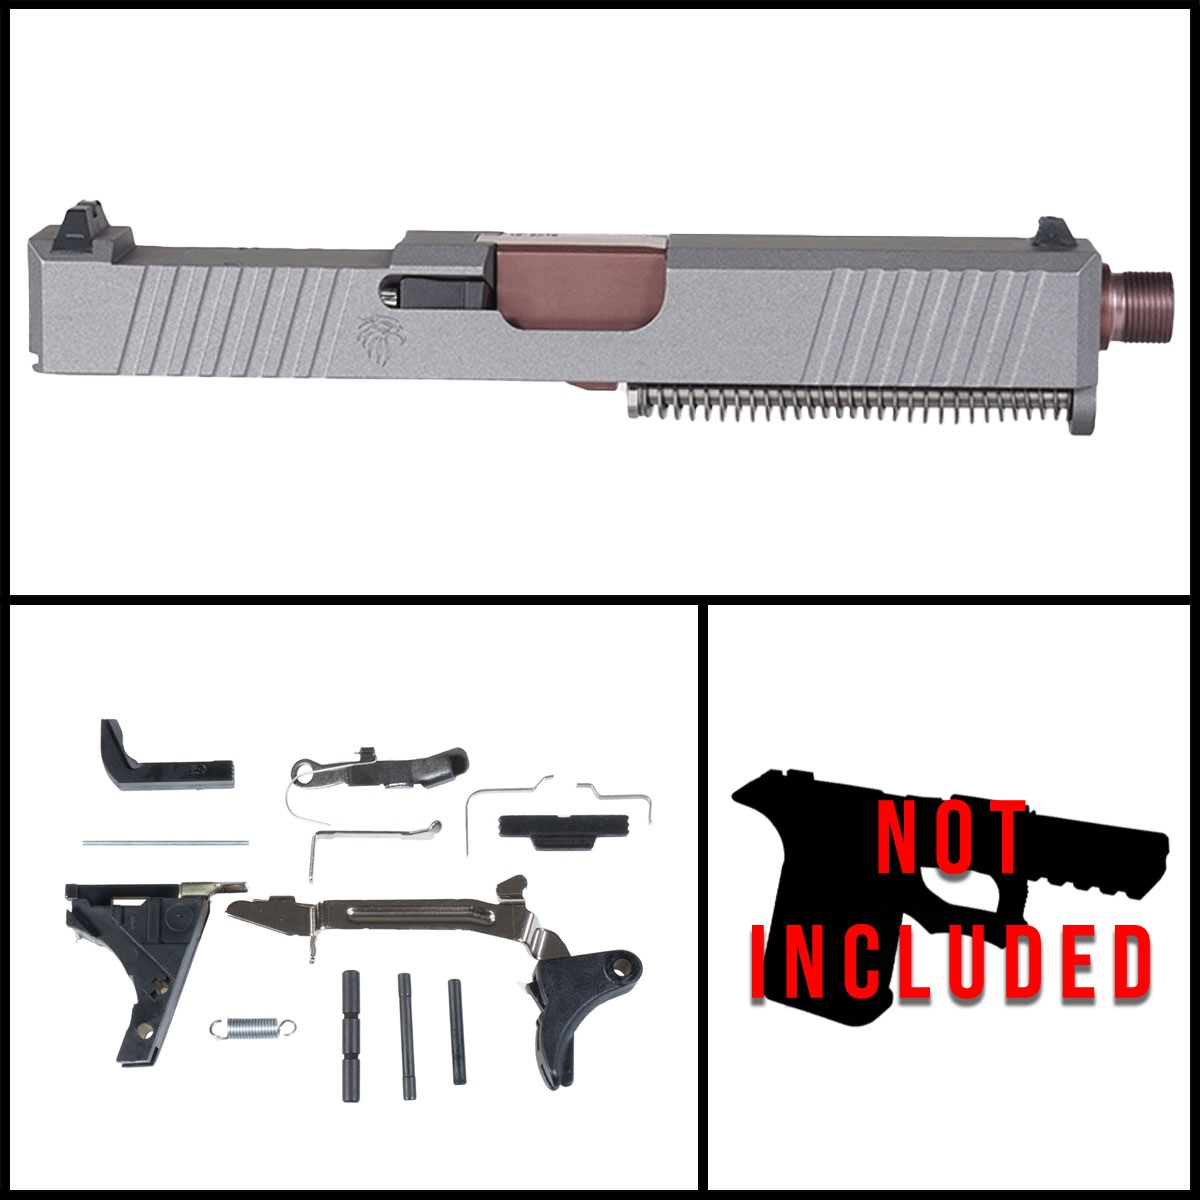 OTD 'Fat Man' 9mm Full Pistol Build Kit (Everything Minus Frame) - Glock 19 Gen 1-3 Compatible